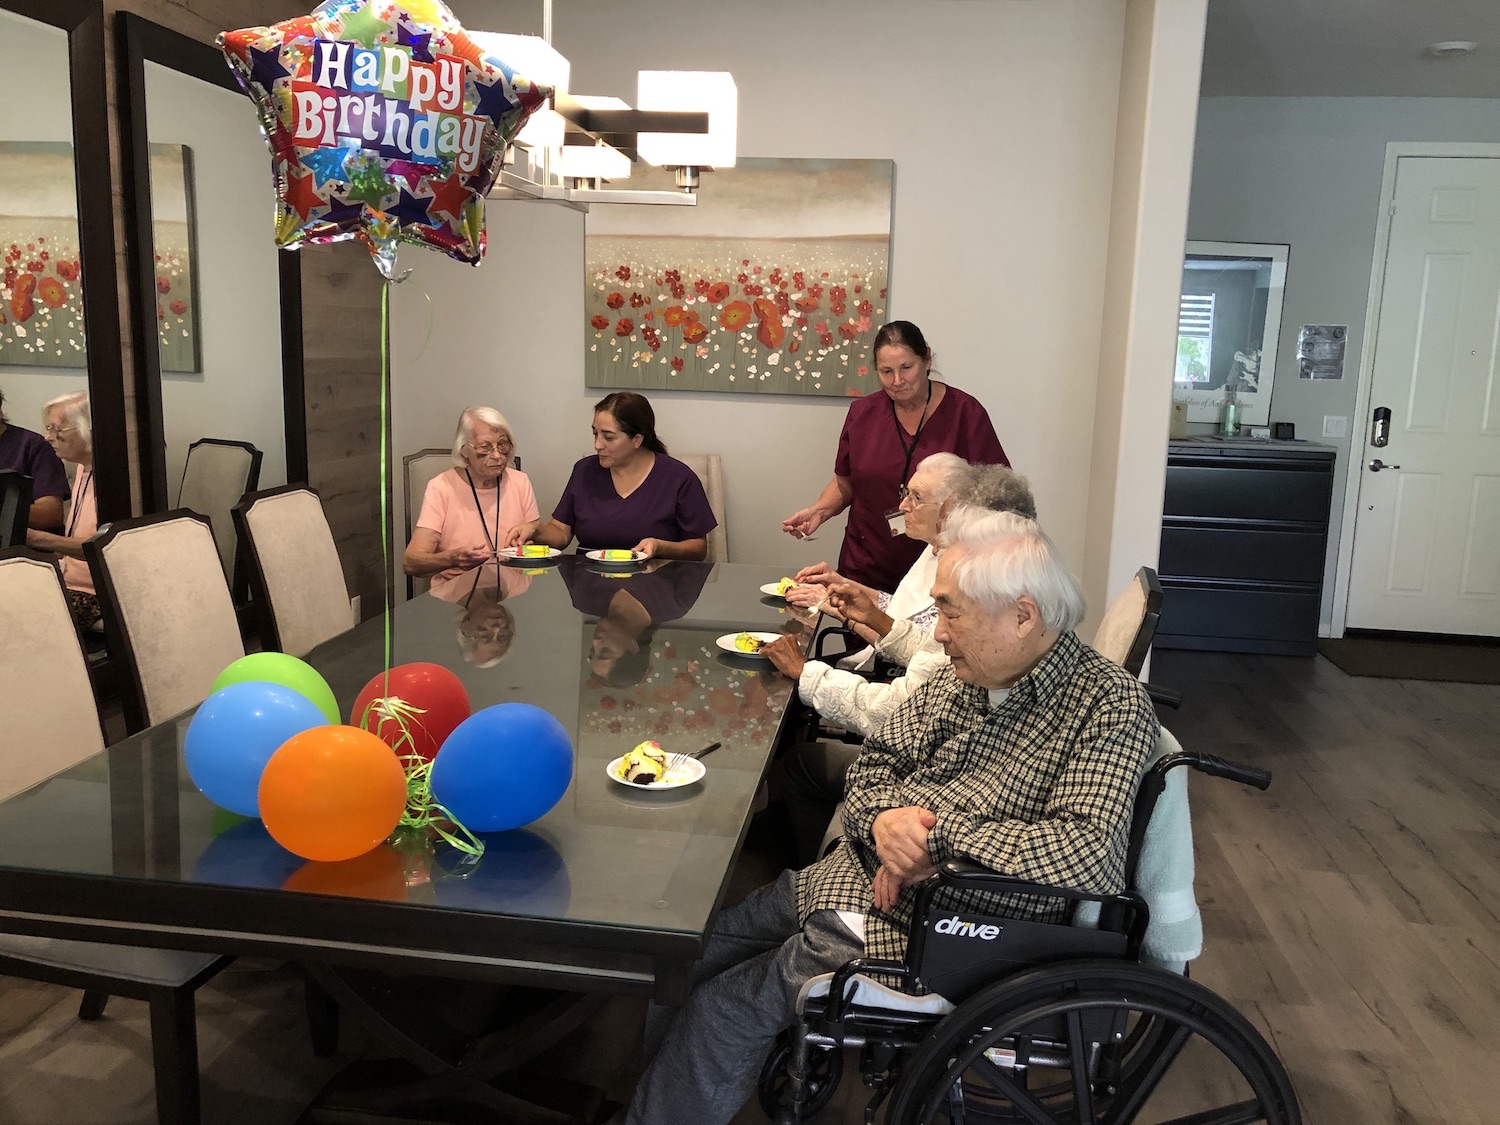 Residents celebrating a birthday